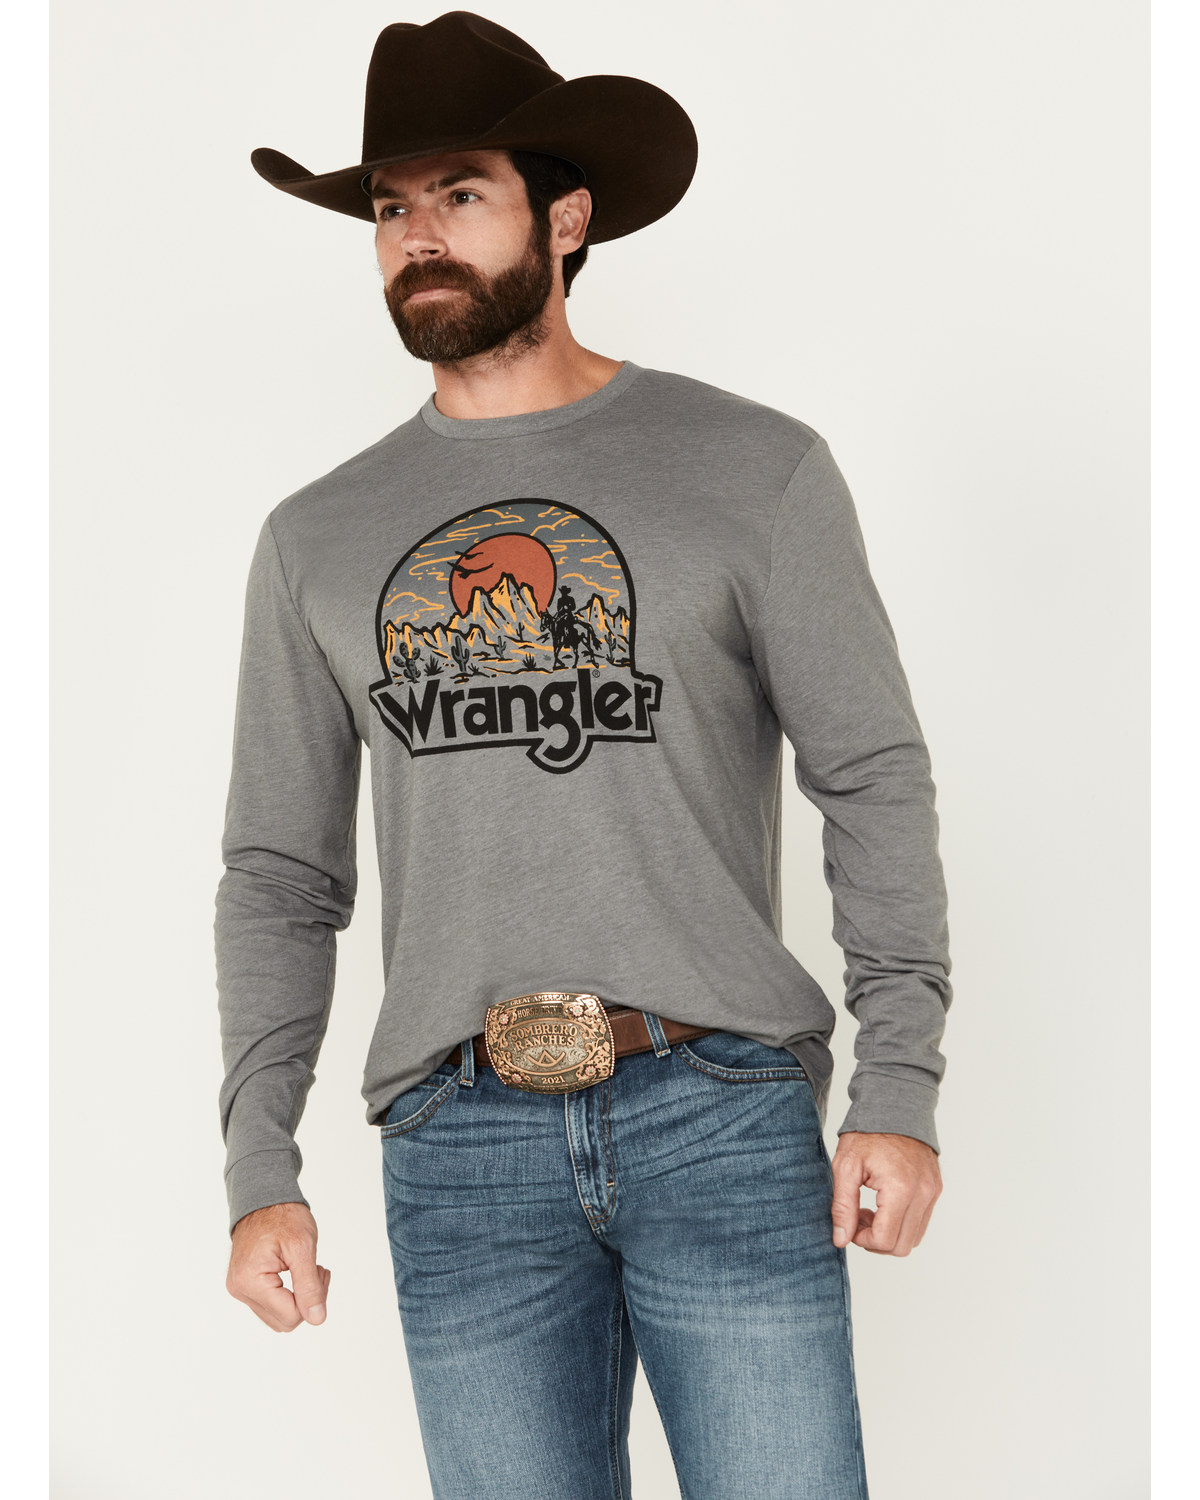 Wrangler Men's Landscape Logo Long Sleeve Graphic T-Shirt